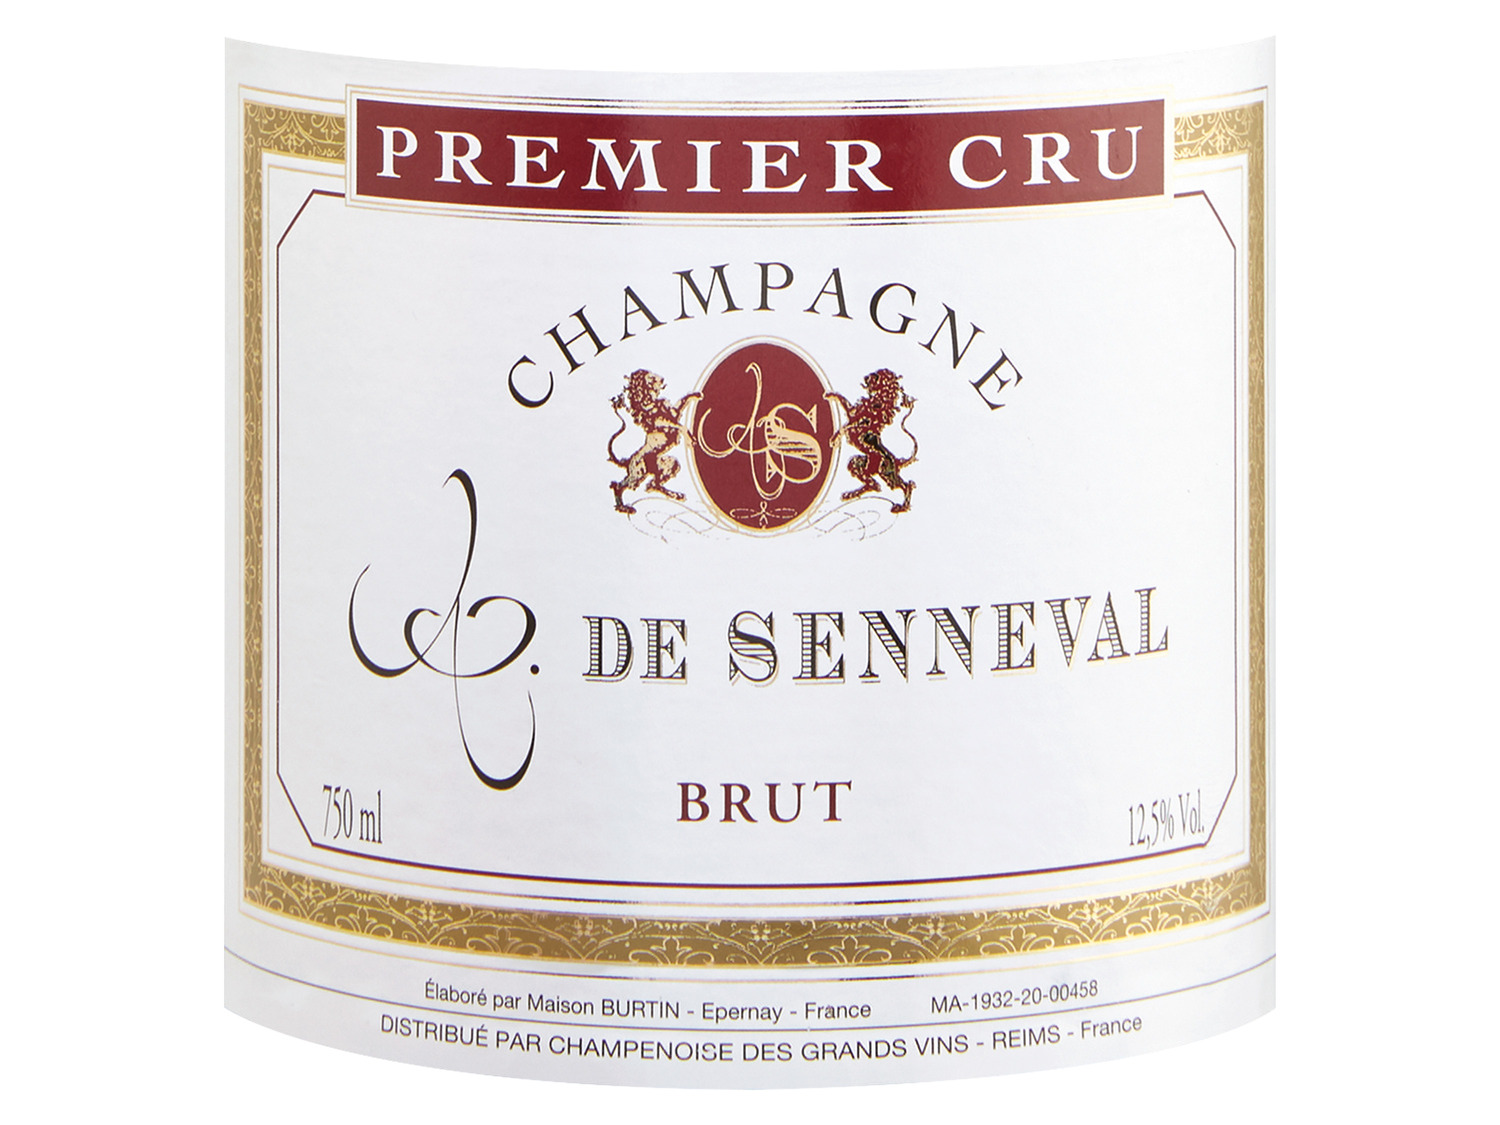 Comte de Senneval Premier brut, Cru Champagner 2011